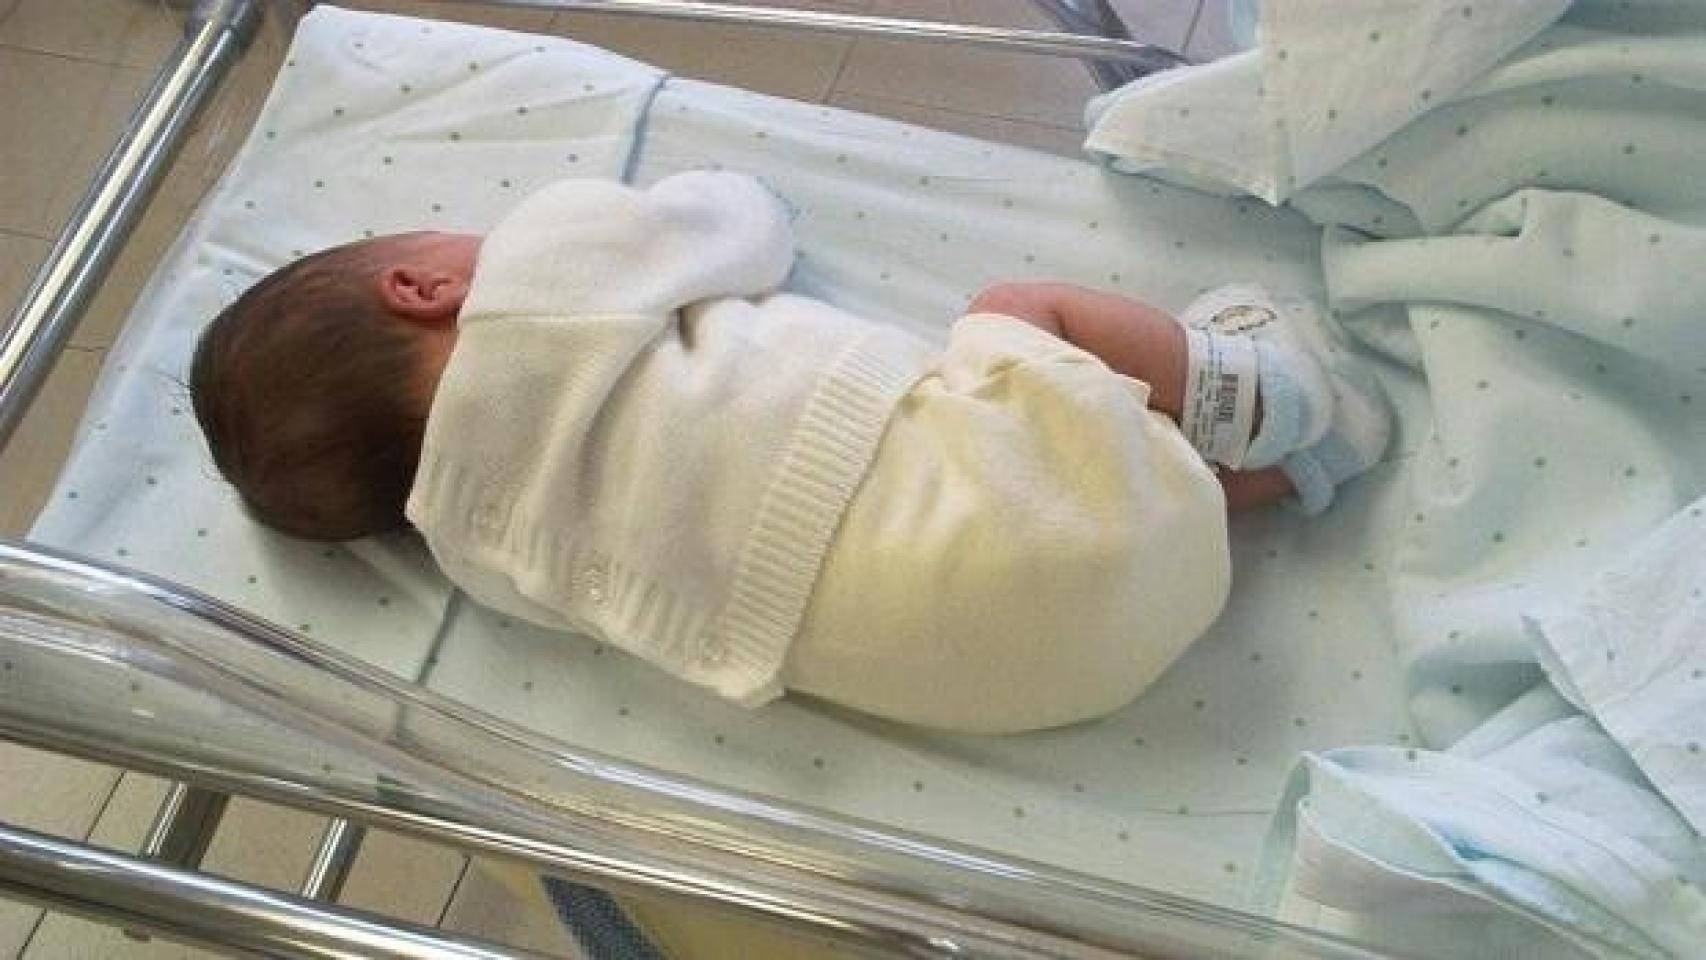 Bebé Recién Nacido En El Hospital Imagen de archivo - Imagen de